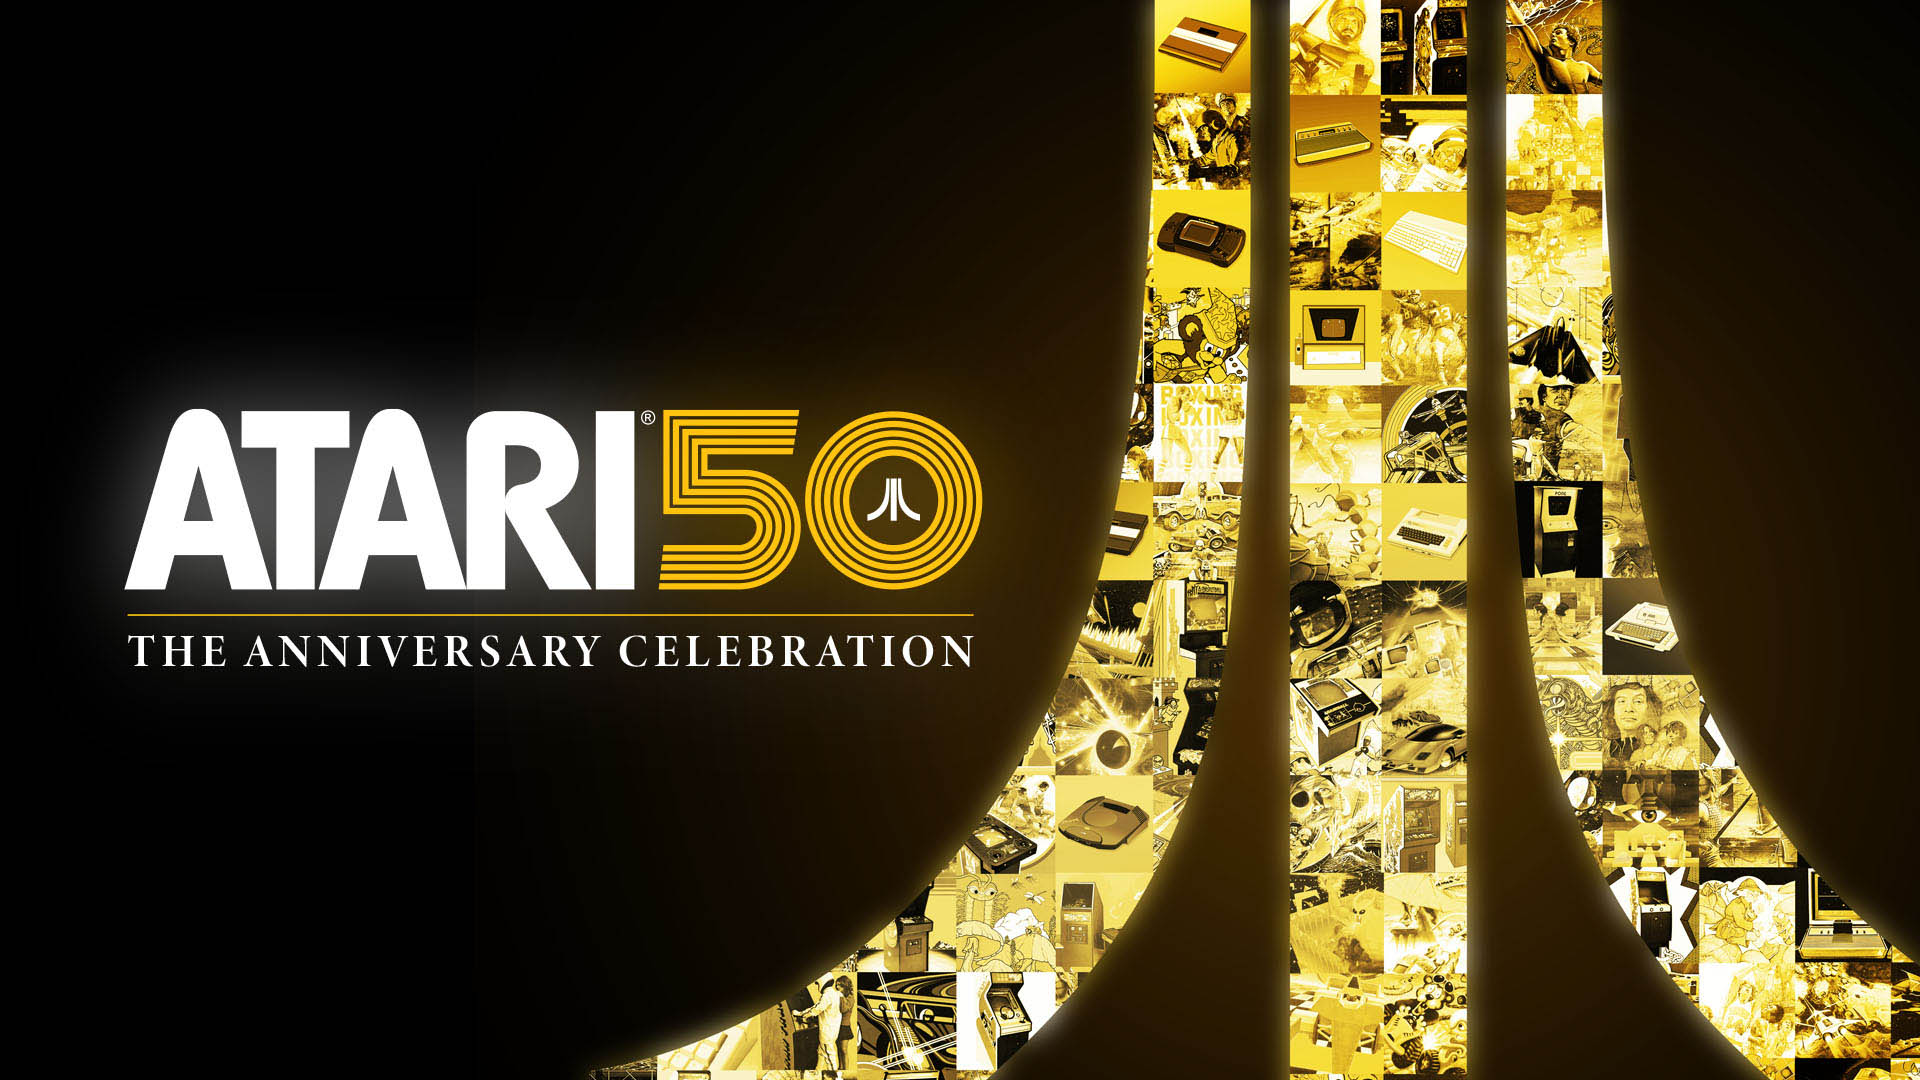 「Atari 50: The Anniversary Celebration」，本日リリース。Atari 